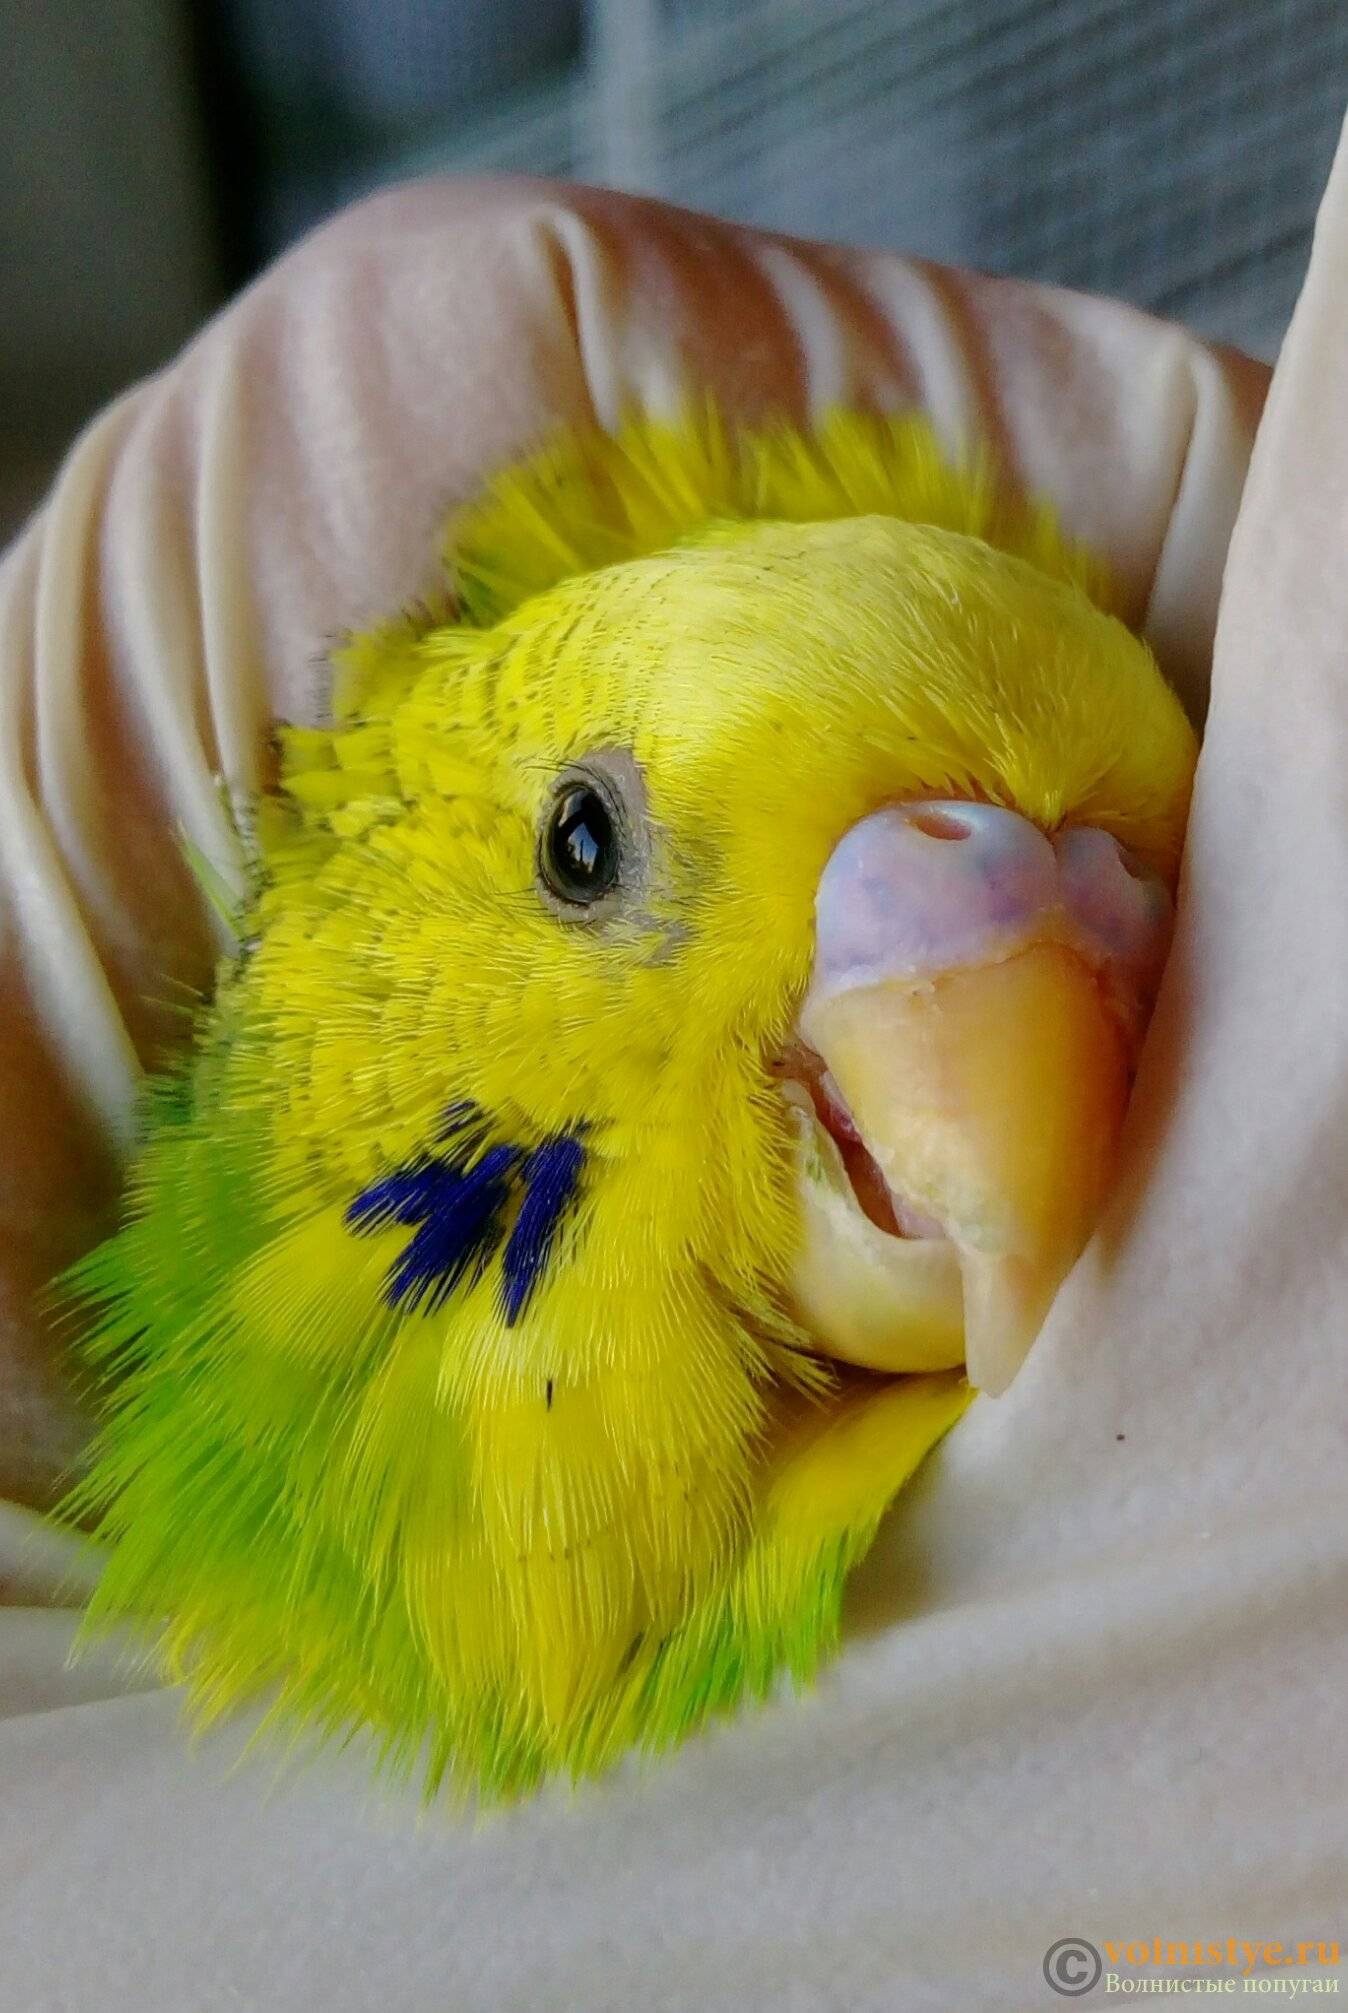 Клещ у волнистого попугая: симптомы и лечение чесоточного мазью